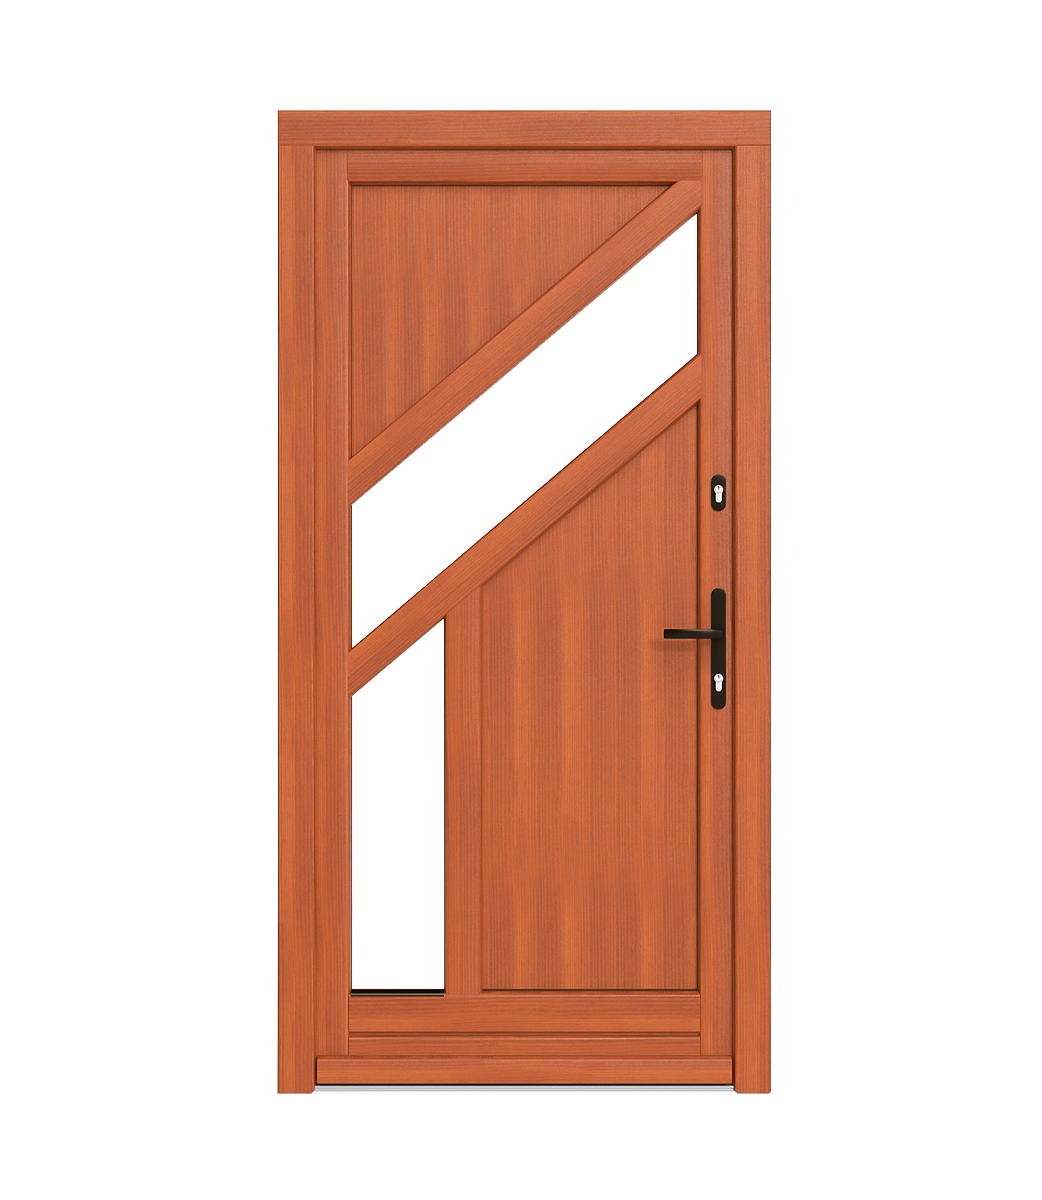 Traverse nelle porte in legno